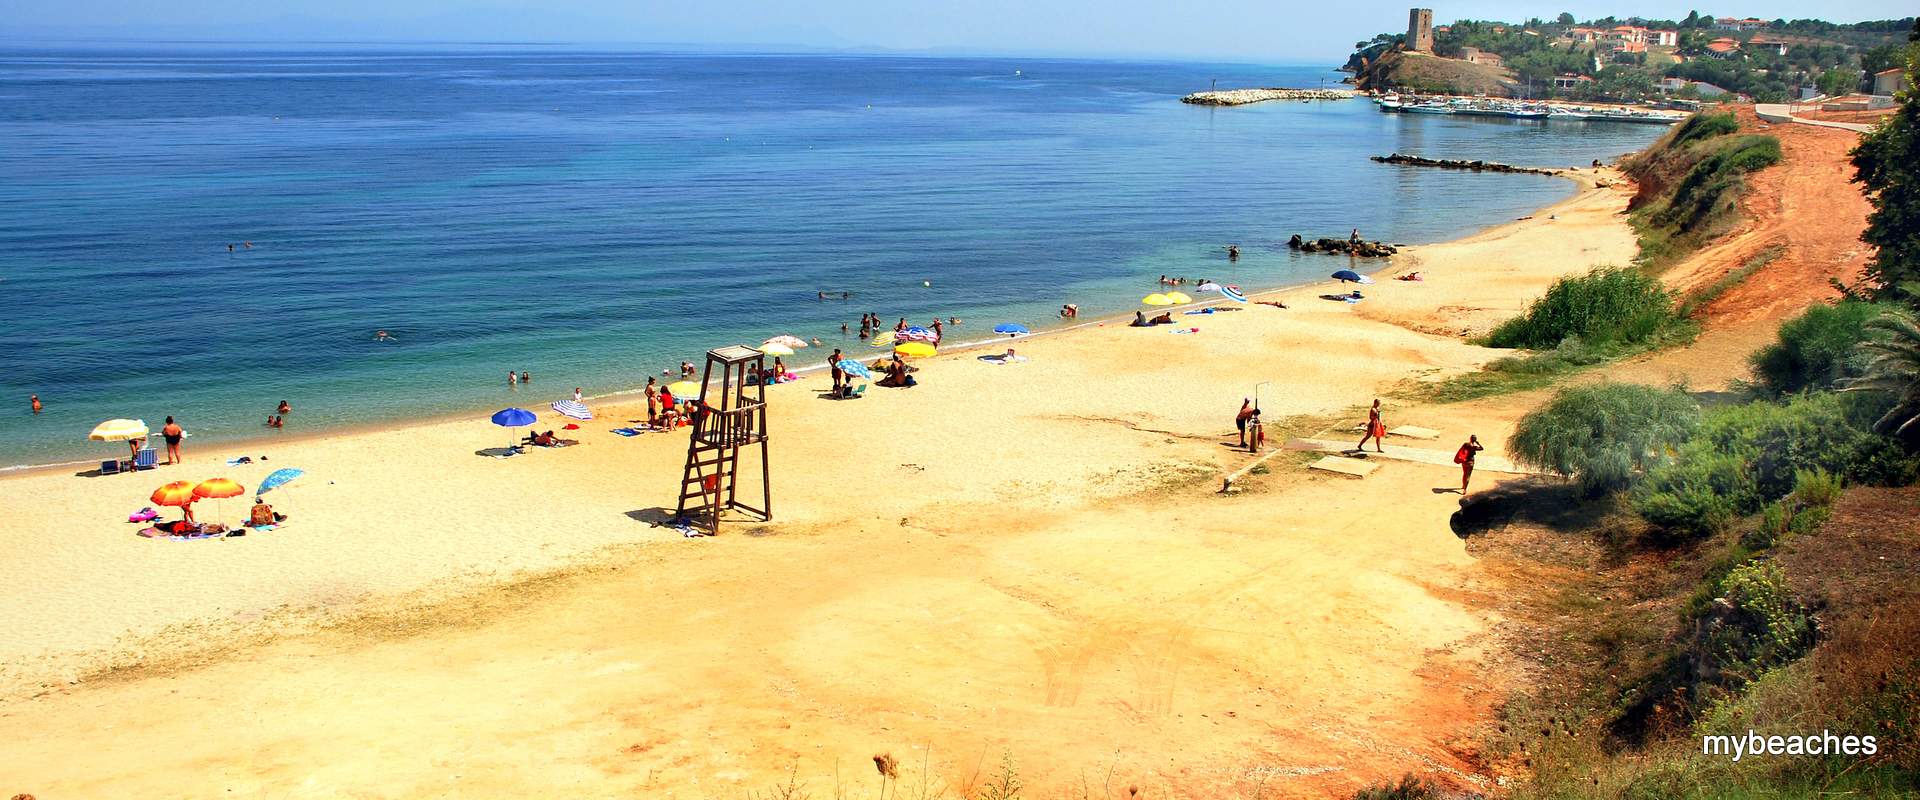 Nea Fokia beach, Kassandra, Halkidiki, Greece